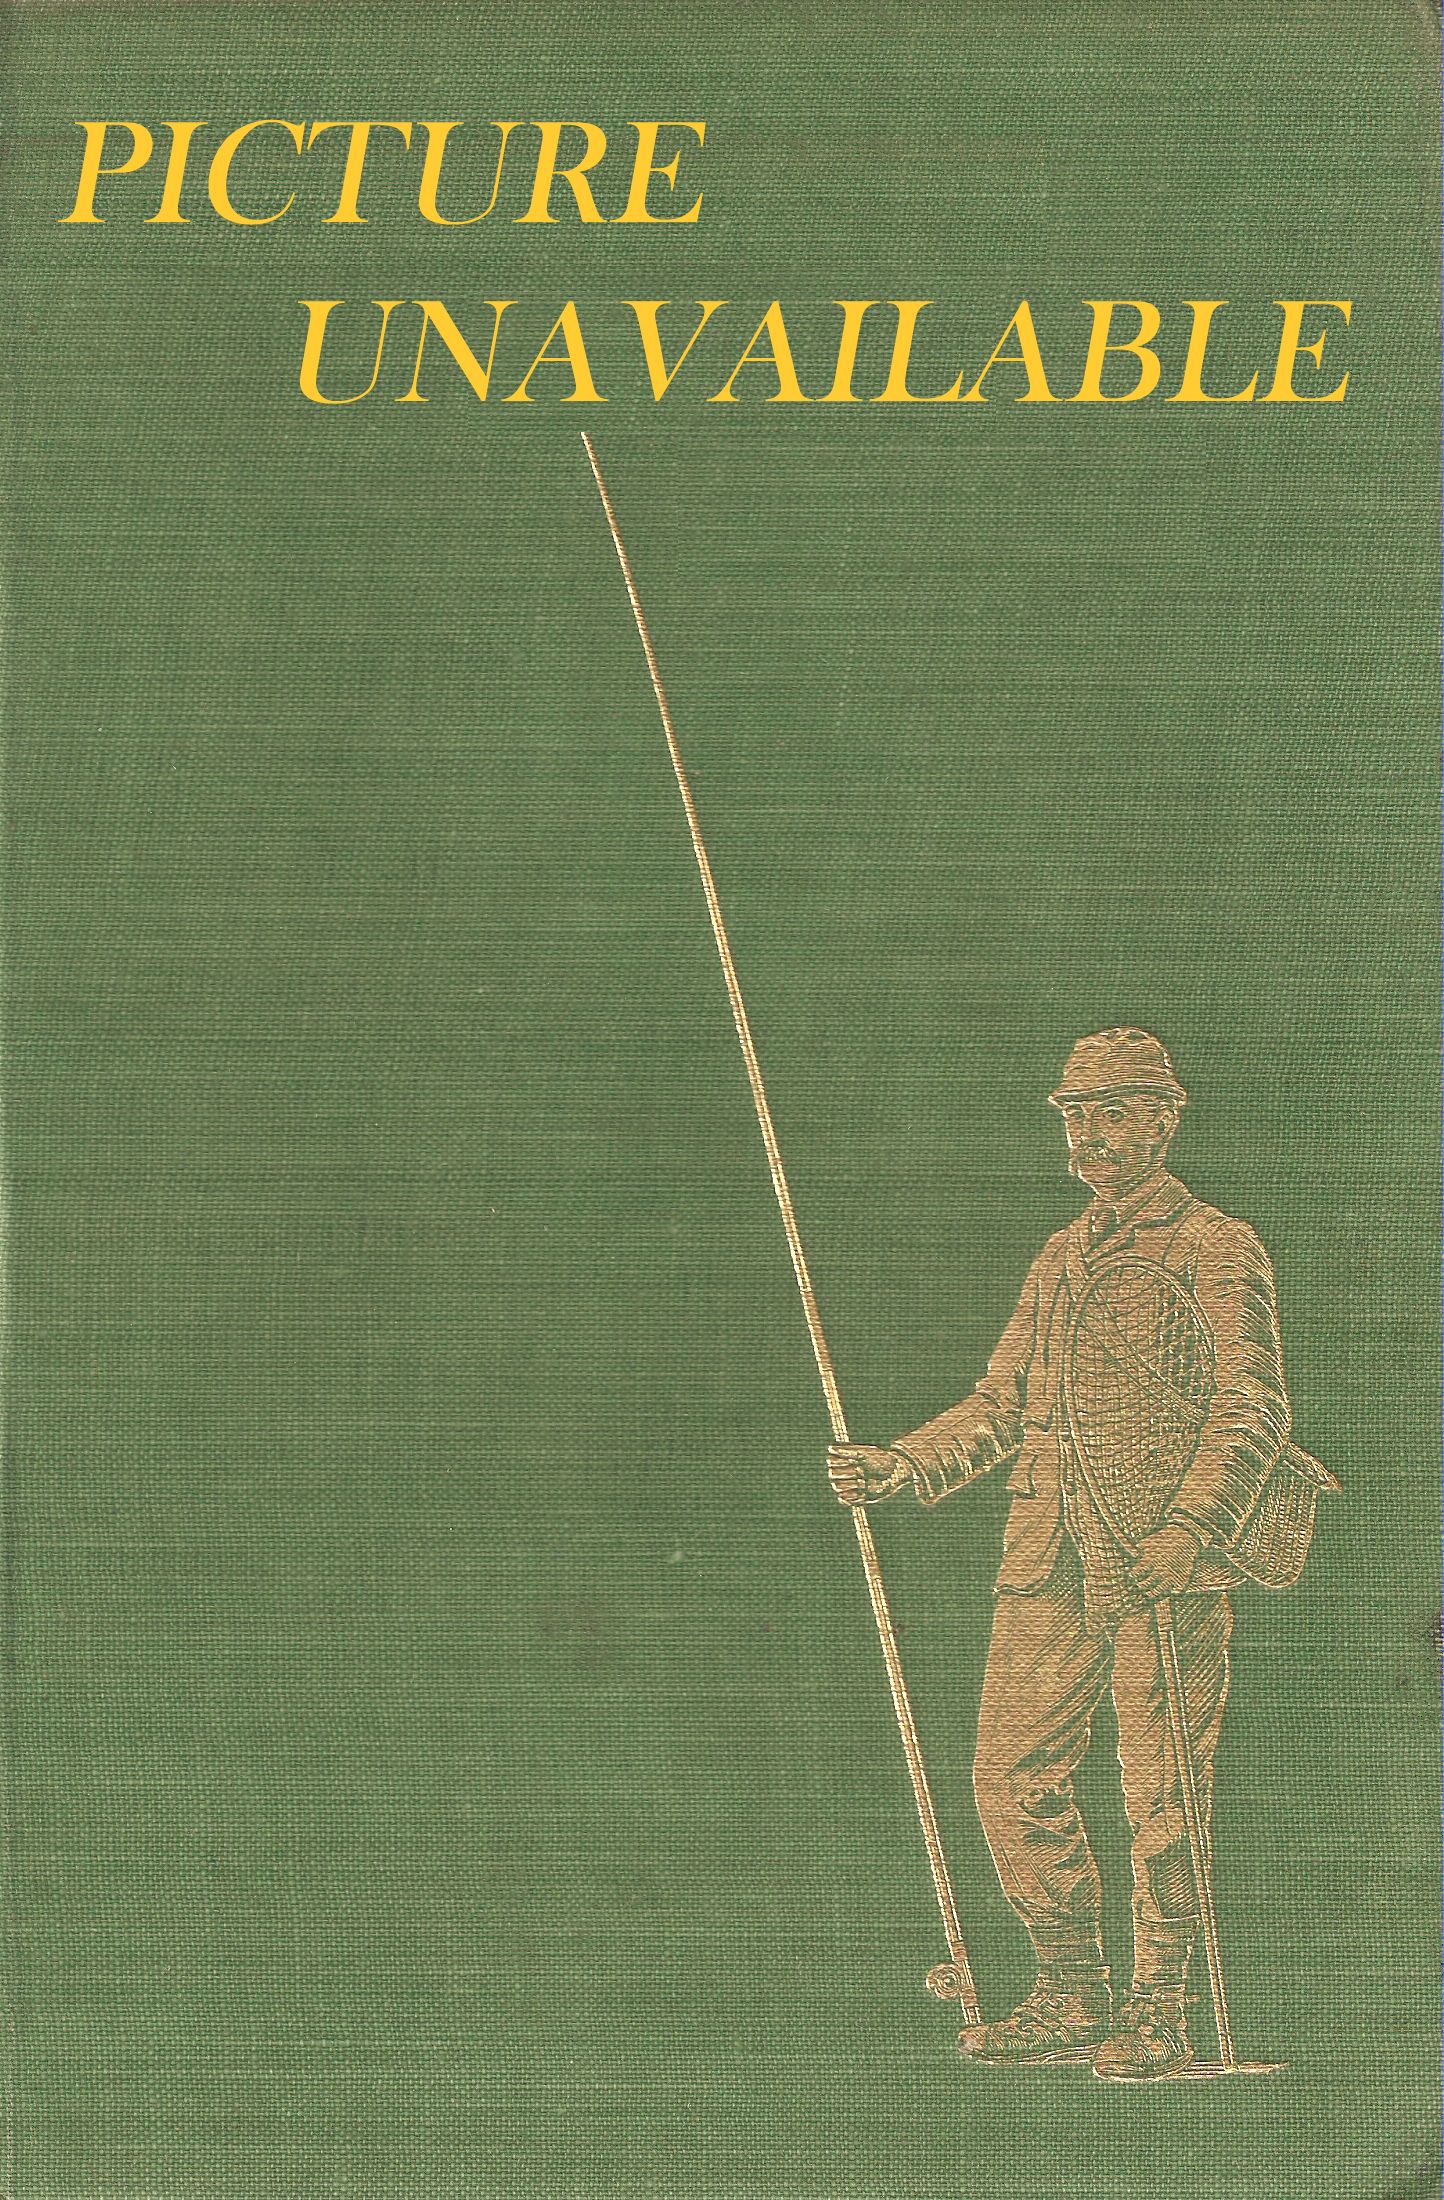 GUNDOG TRAINING BY AMATEURS. By Richard Sharpe. 1979 Tideline Books  hardback edition.